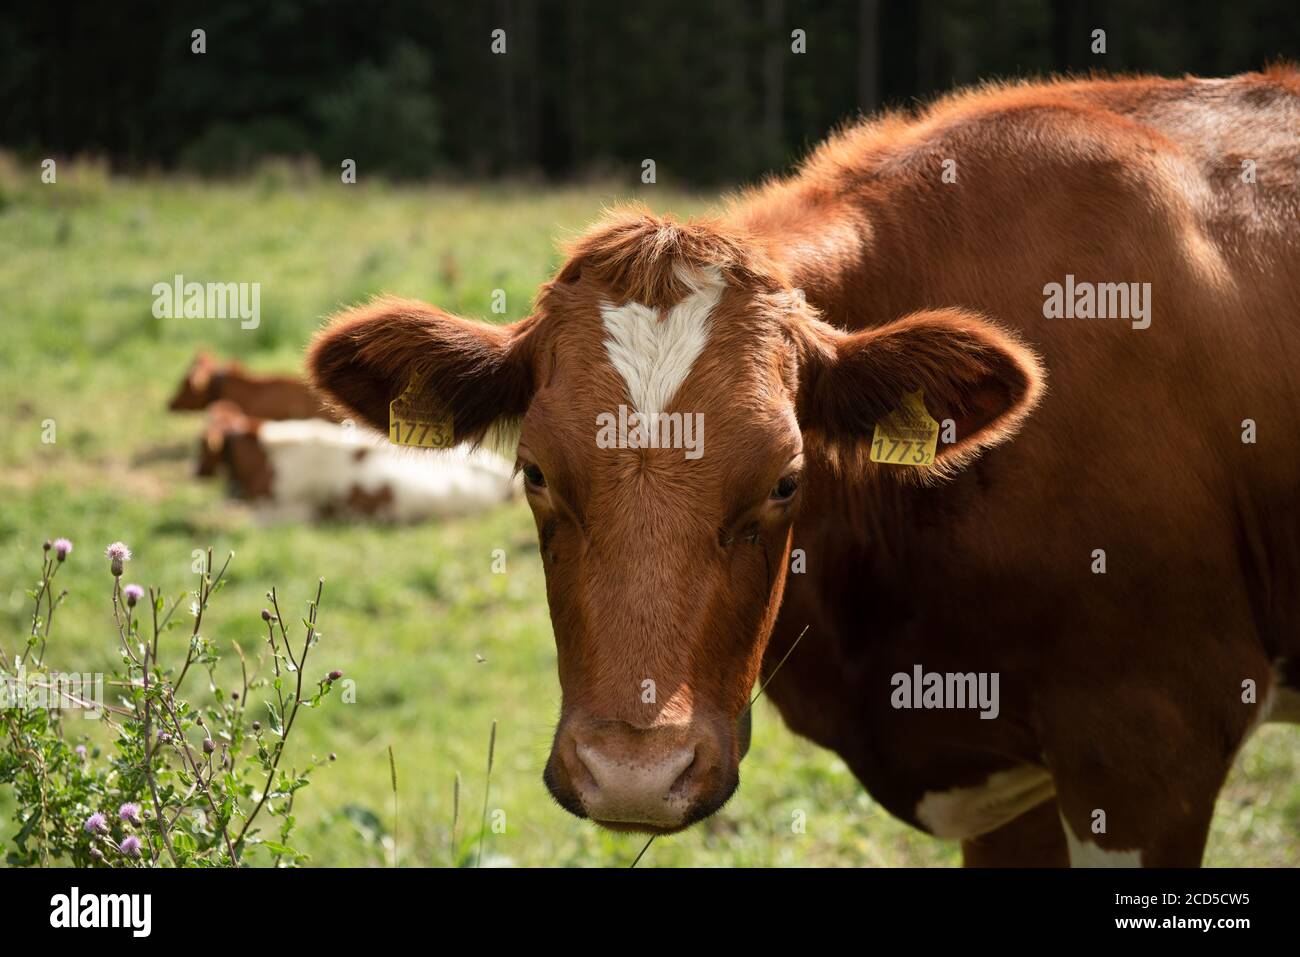 Swiss cow eating grass, Switzerland Stock Photo